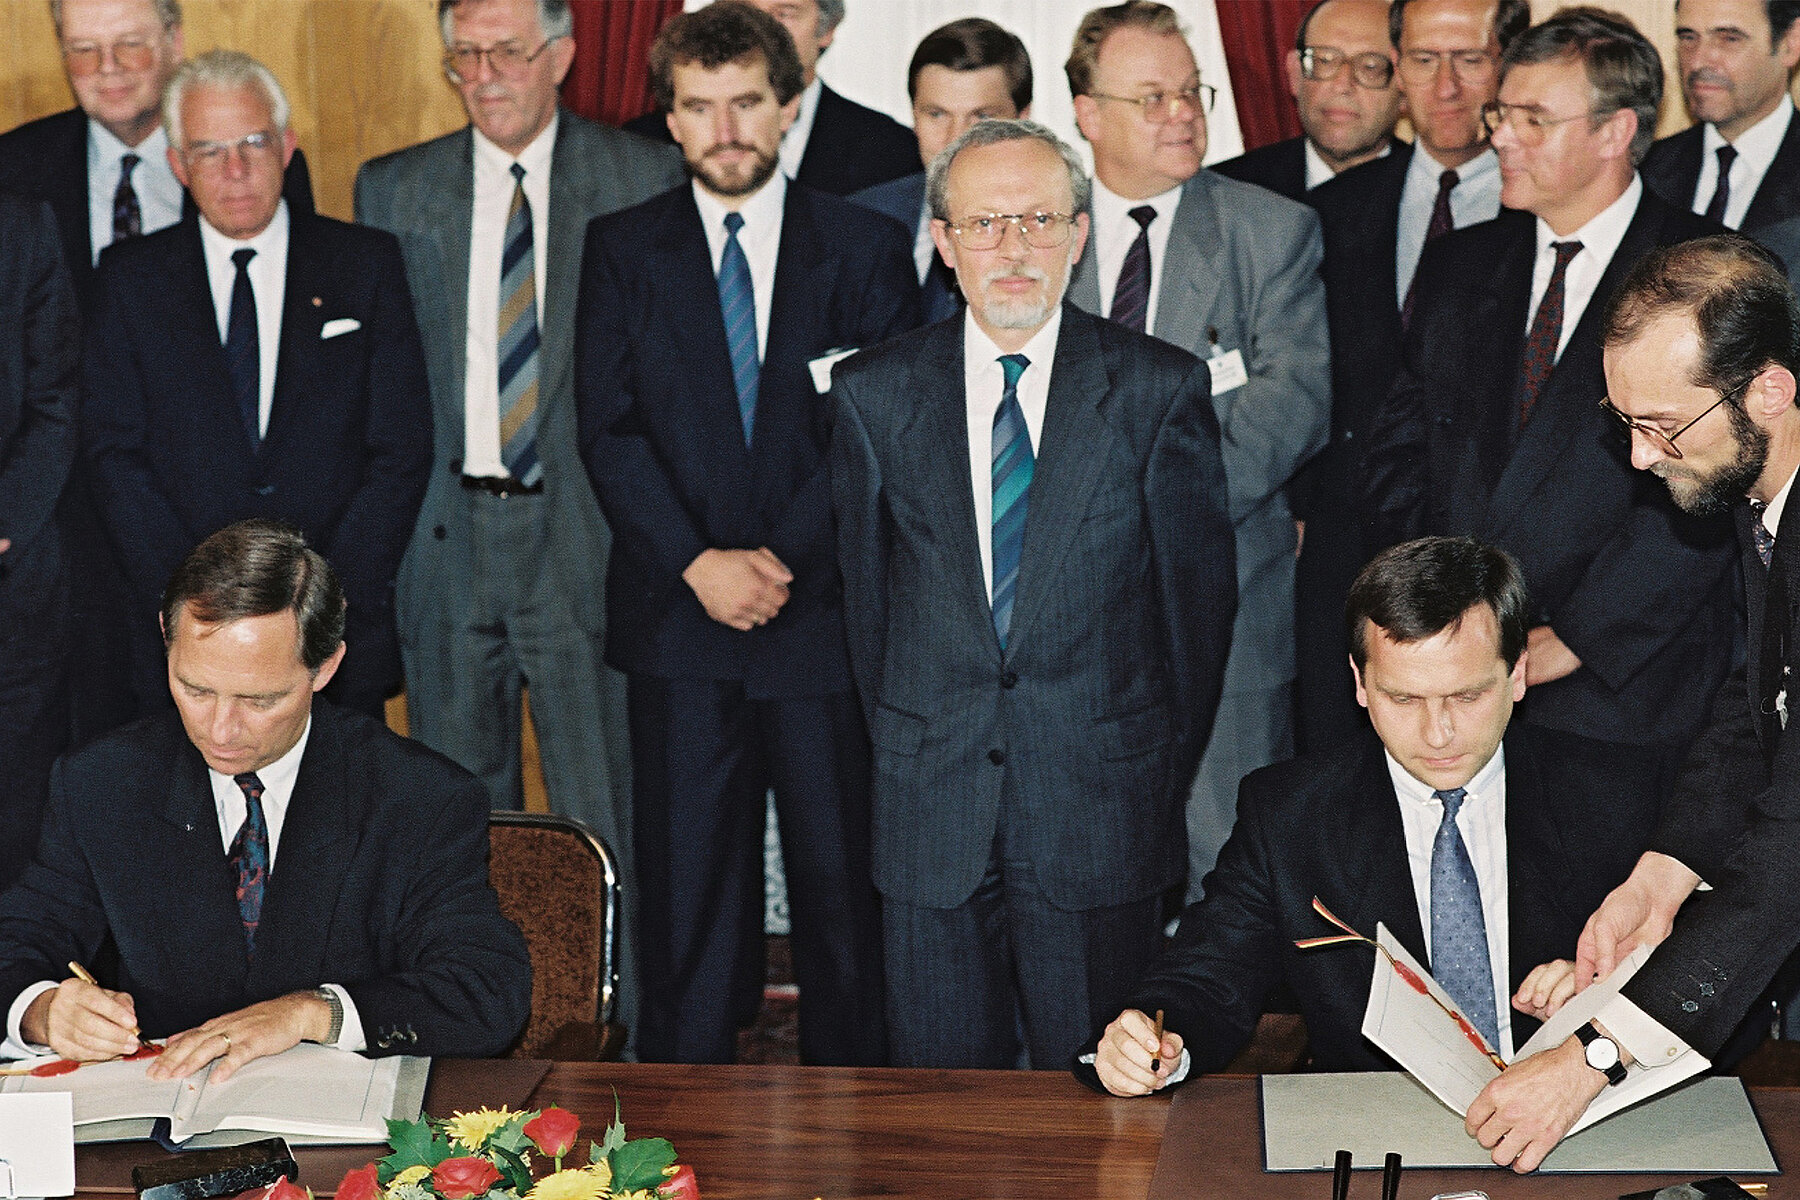 Mehrere Männer in Anzug stehen in einer Reihe. Im Vordergrund sitzen zwei Männer am Tisch und unterzeichnen jeweils ein Dokument.  